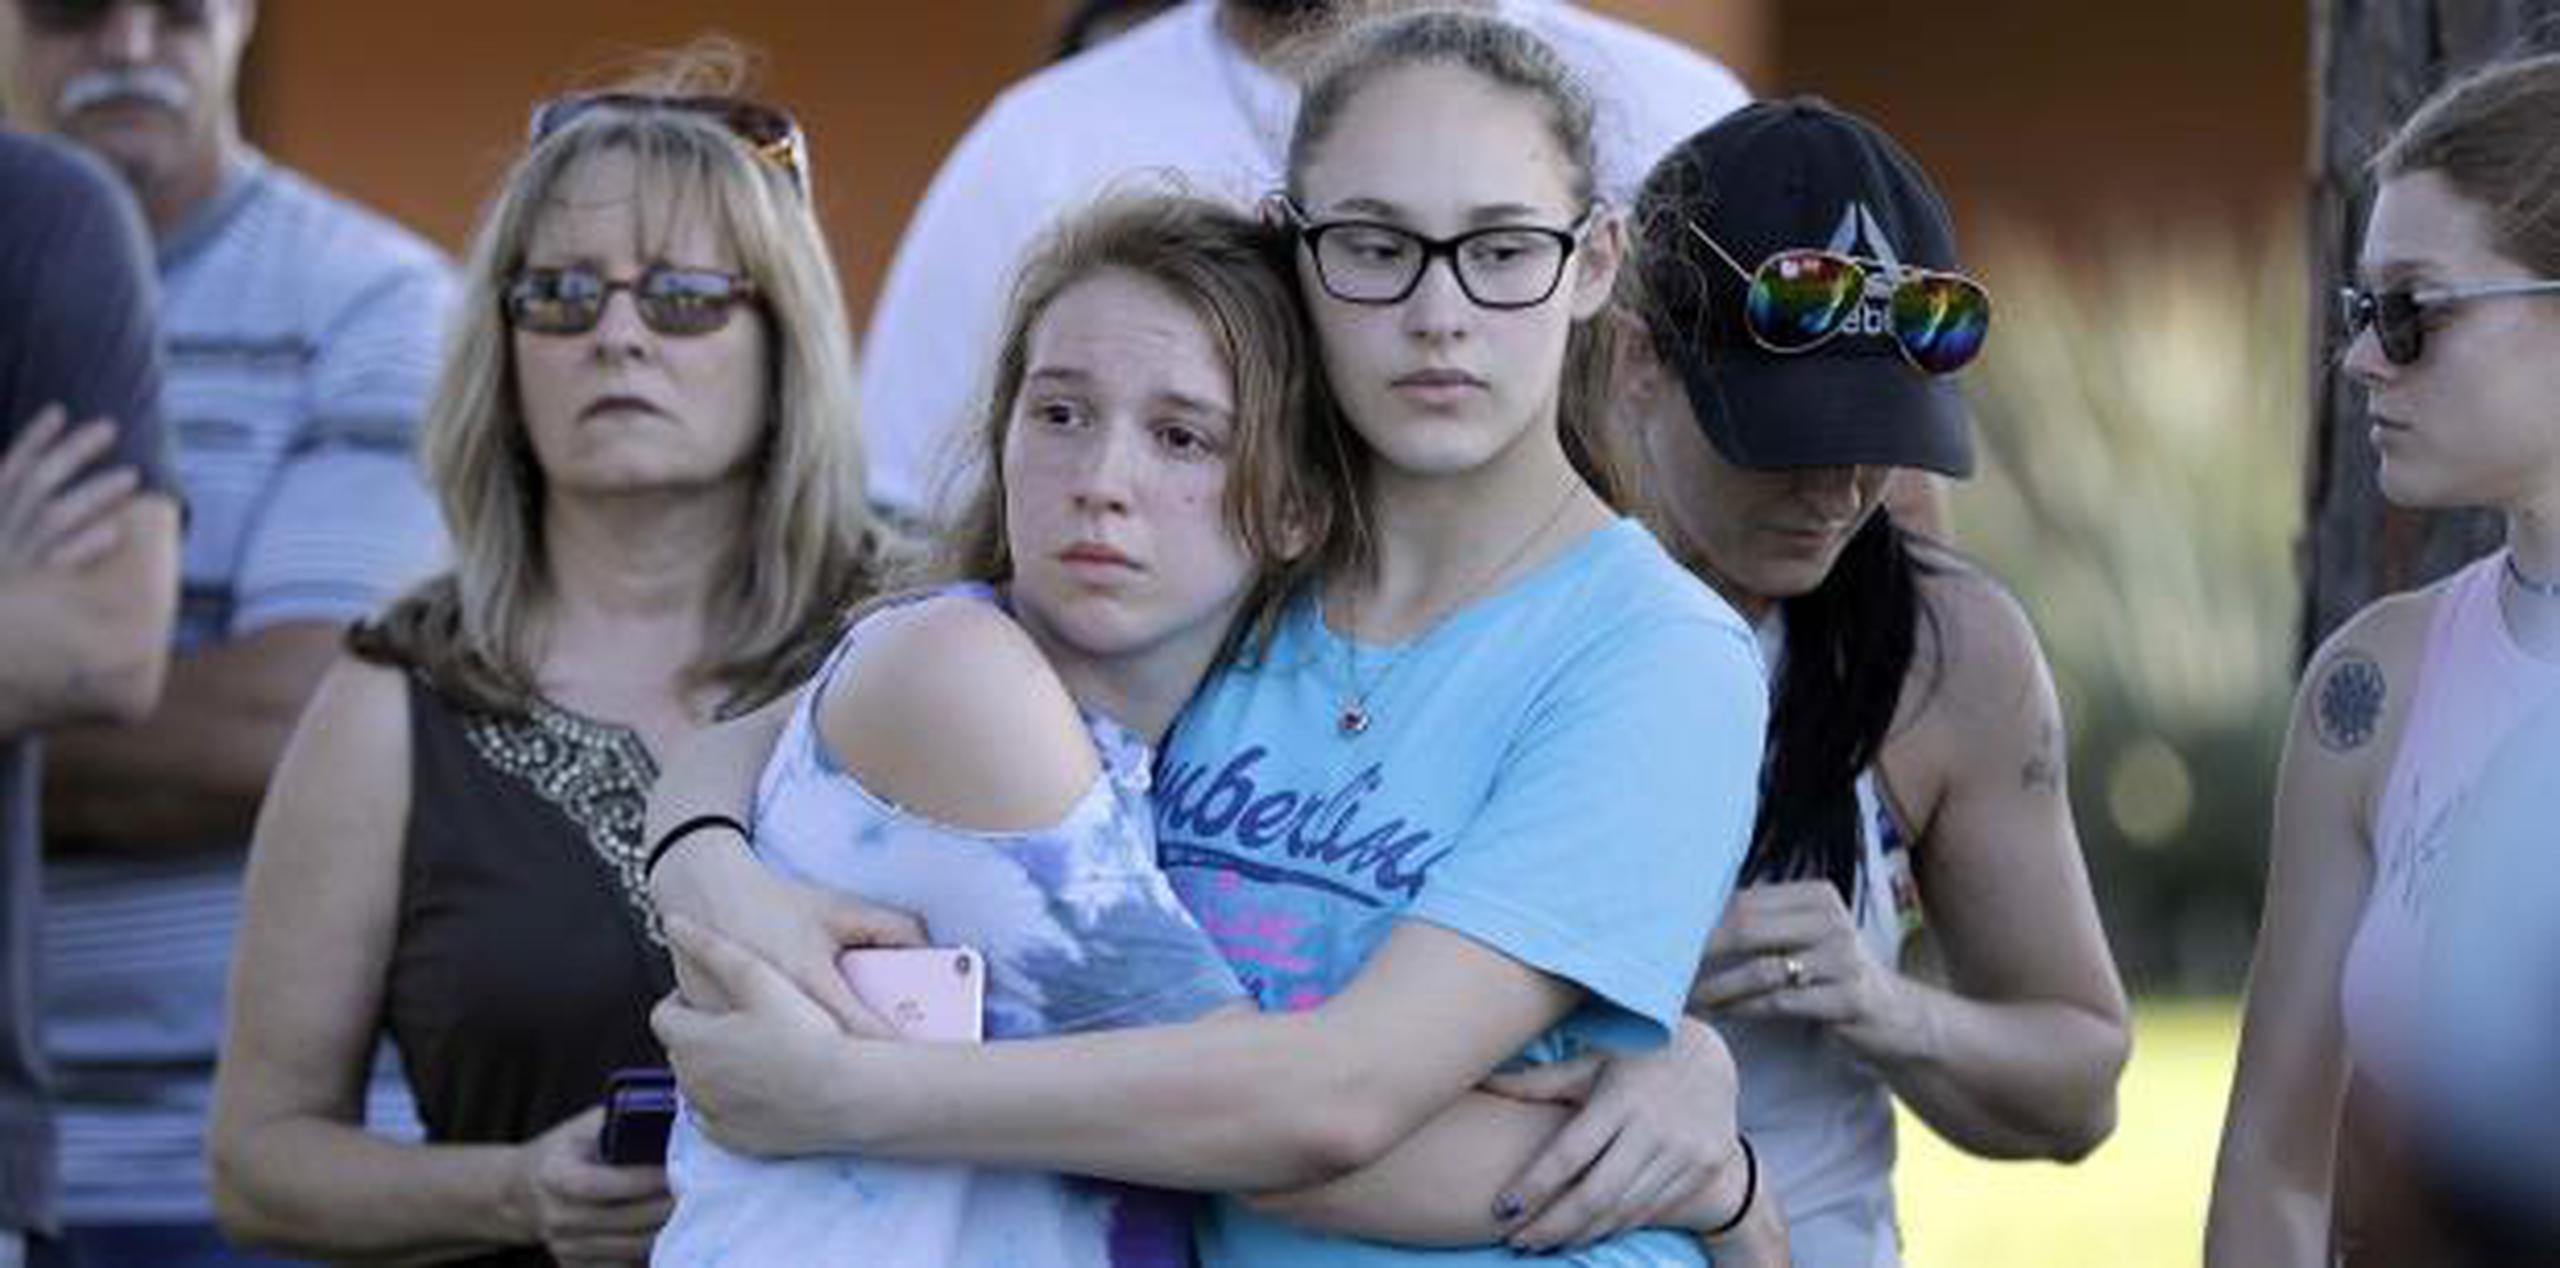 Estudiantes esperan el comienzo de una vigilia de oración después del tiroteo mortal en una escuela superior en Santa Fe, Texas ocurrido el viernes.  (AP Photo / David J. Phillip)